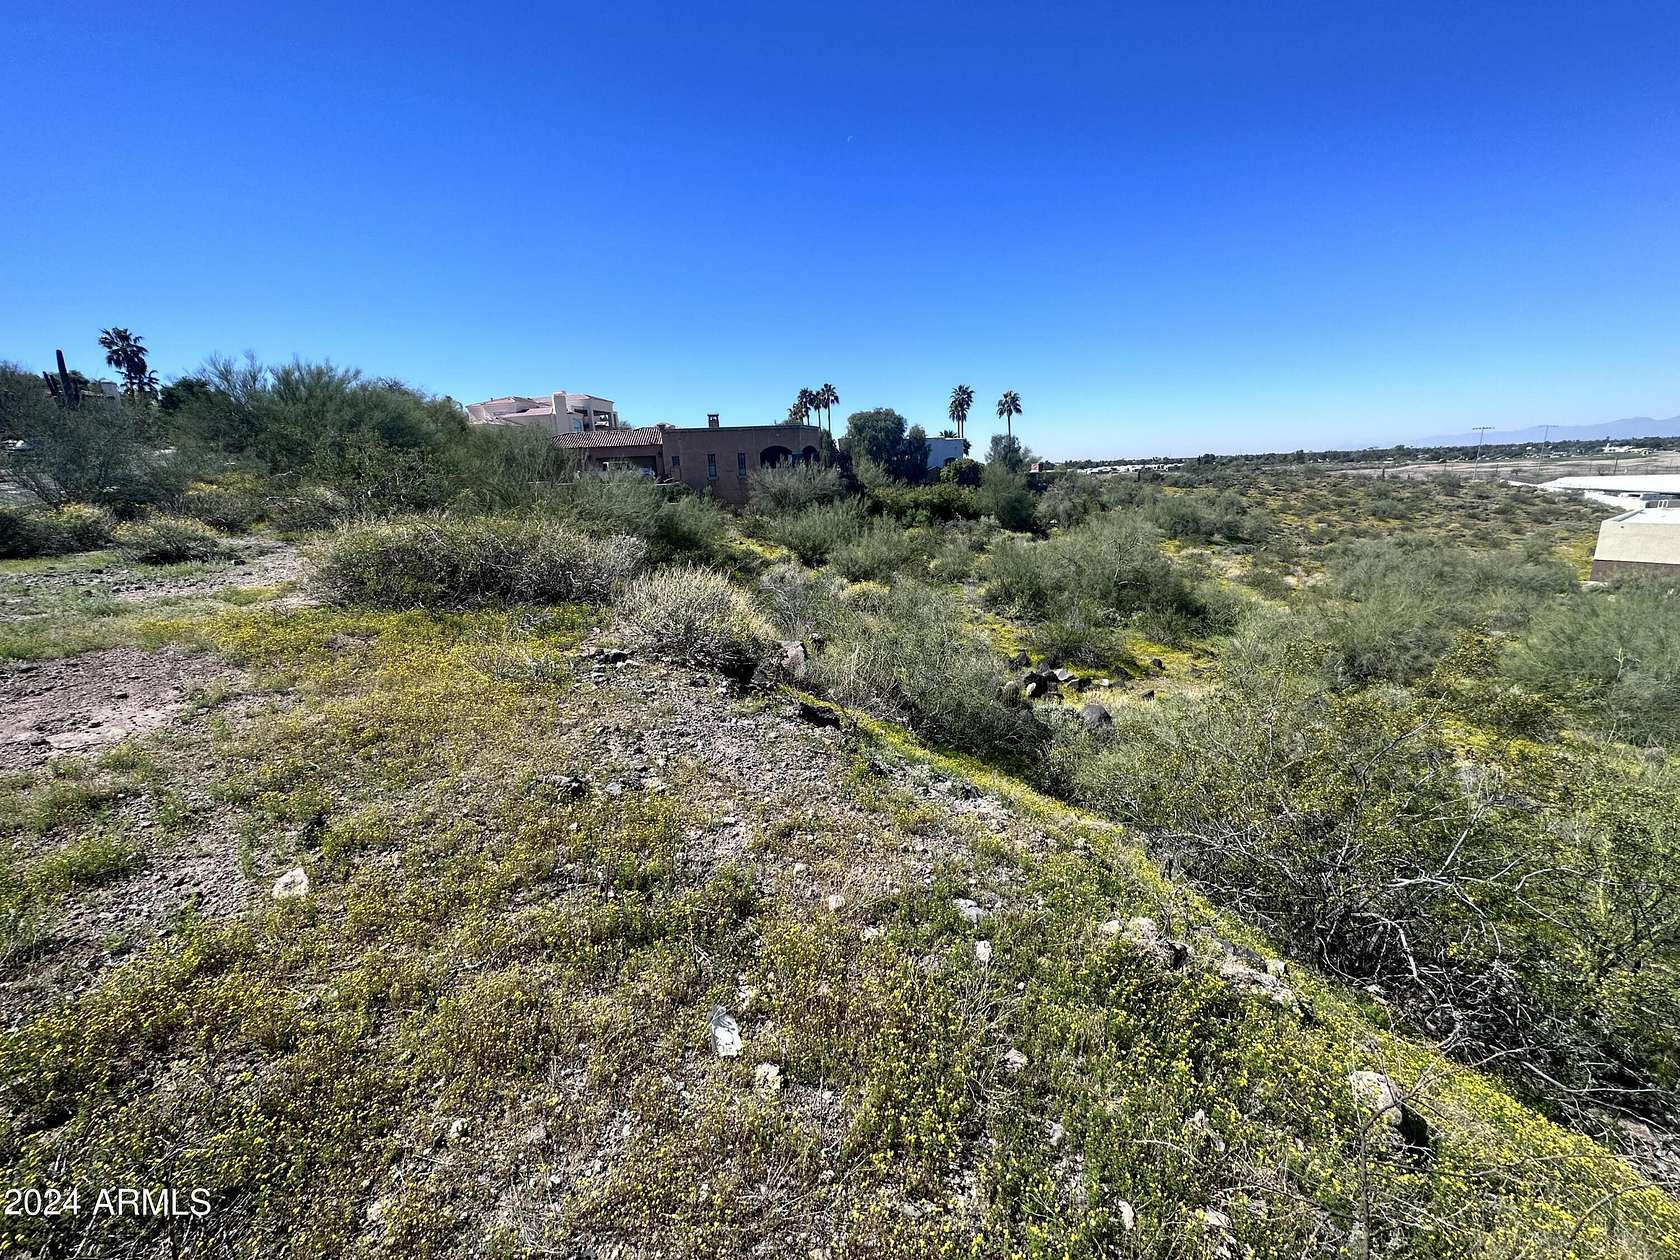 1.3 Acres of Land for Sale in Phoenix, Arizona